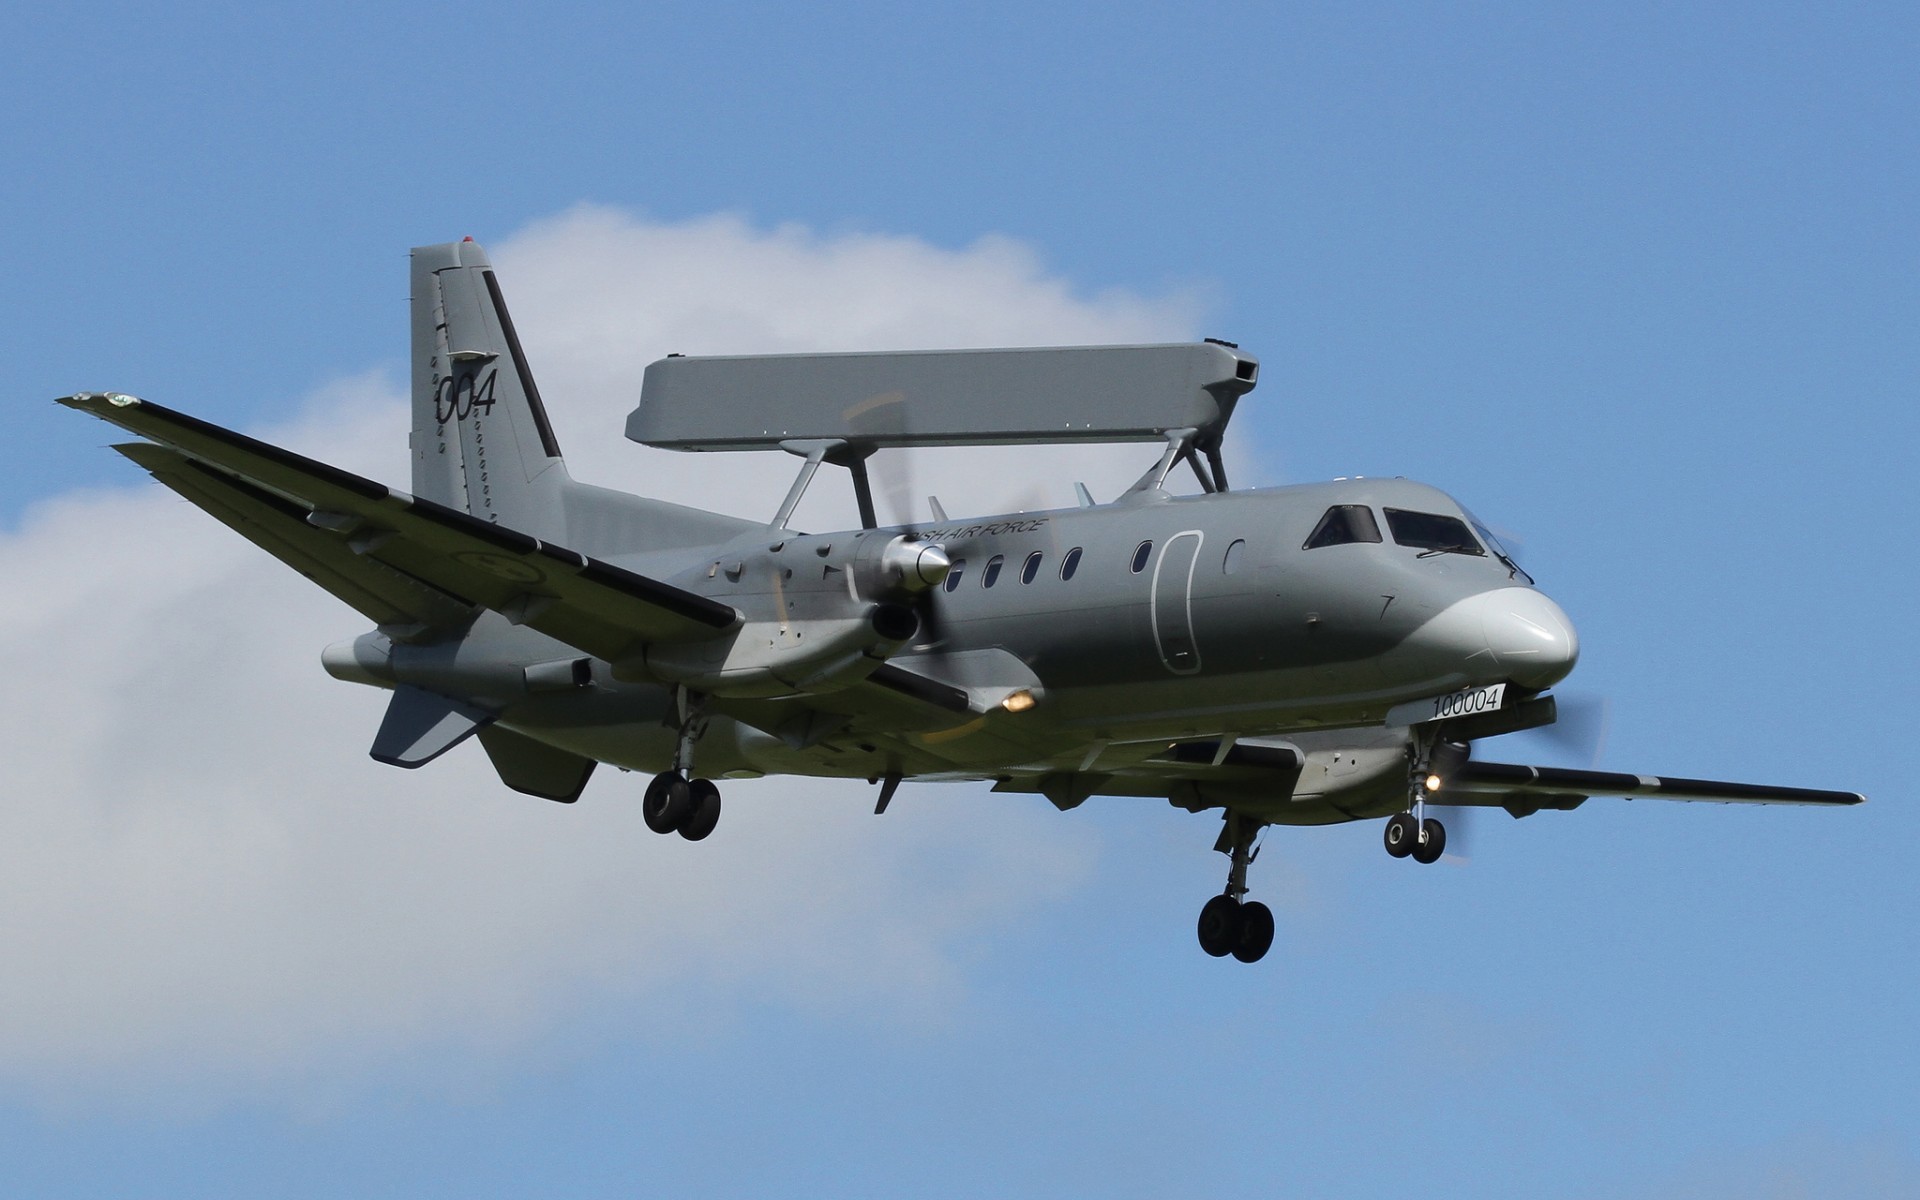 General 1920x1200 military military aircraft aircraft vehicle military vehicle Swedish Air Force airplane saab Swedish aircraft